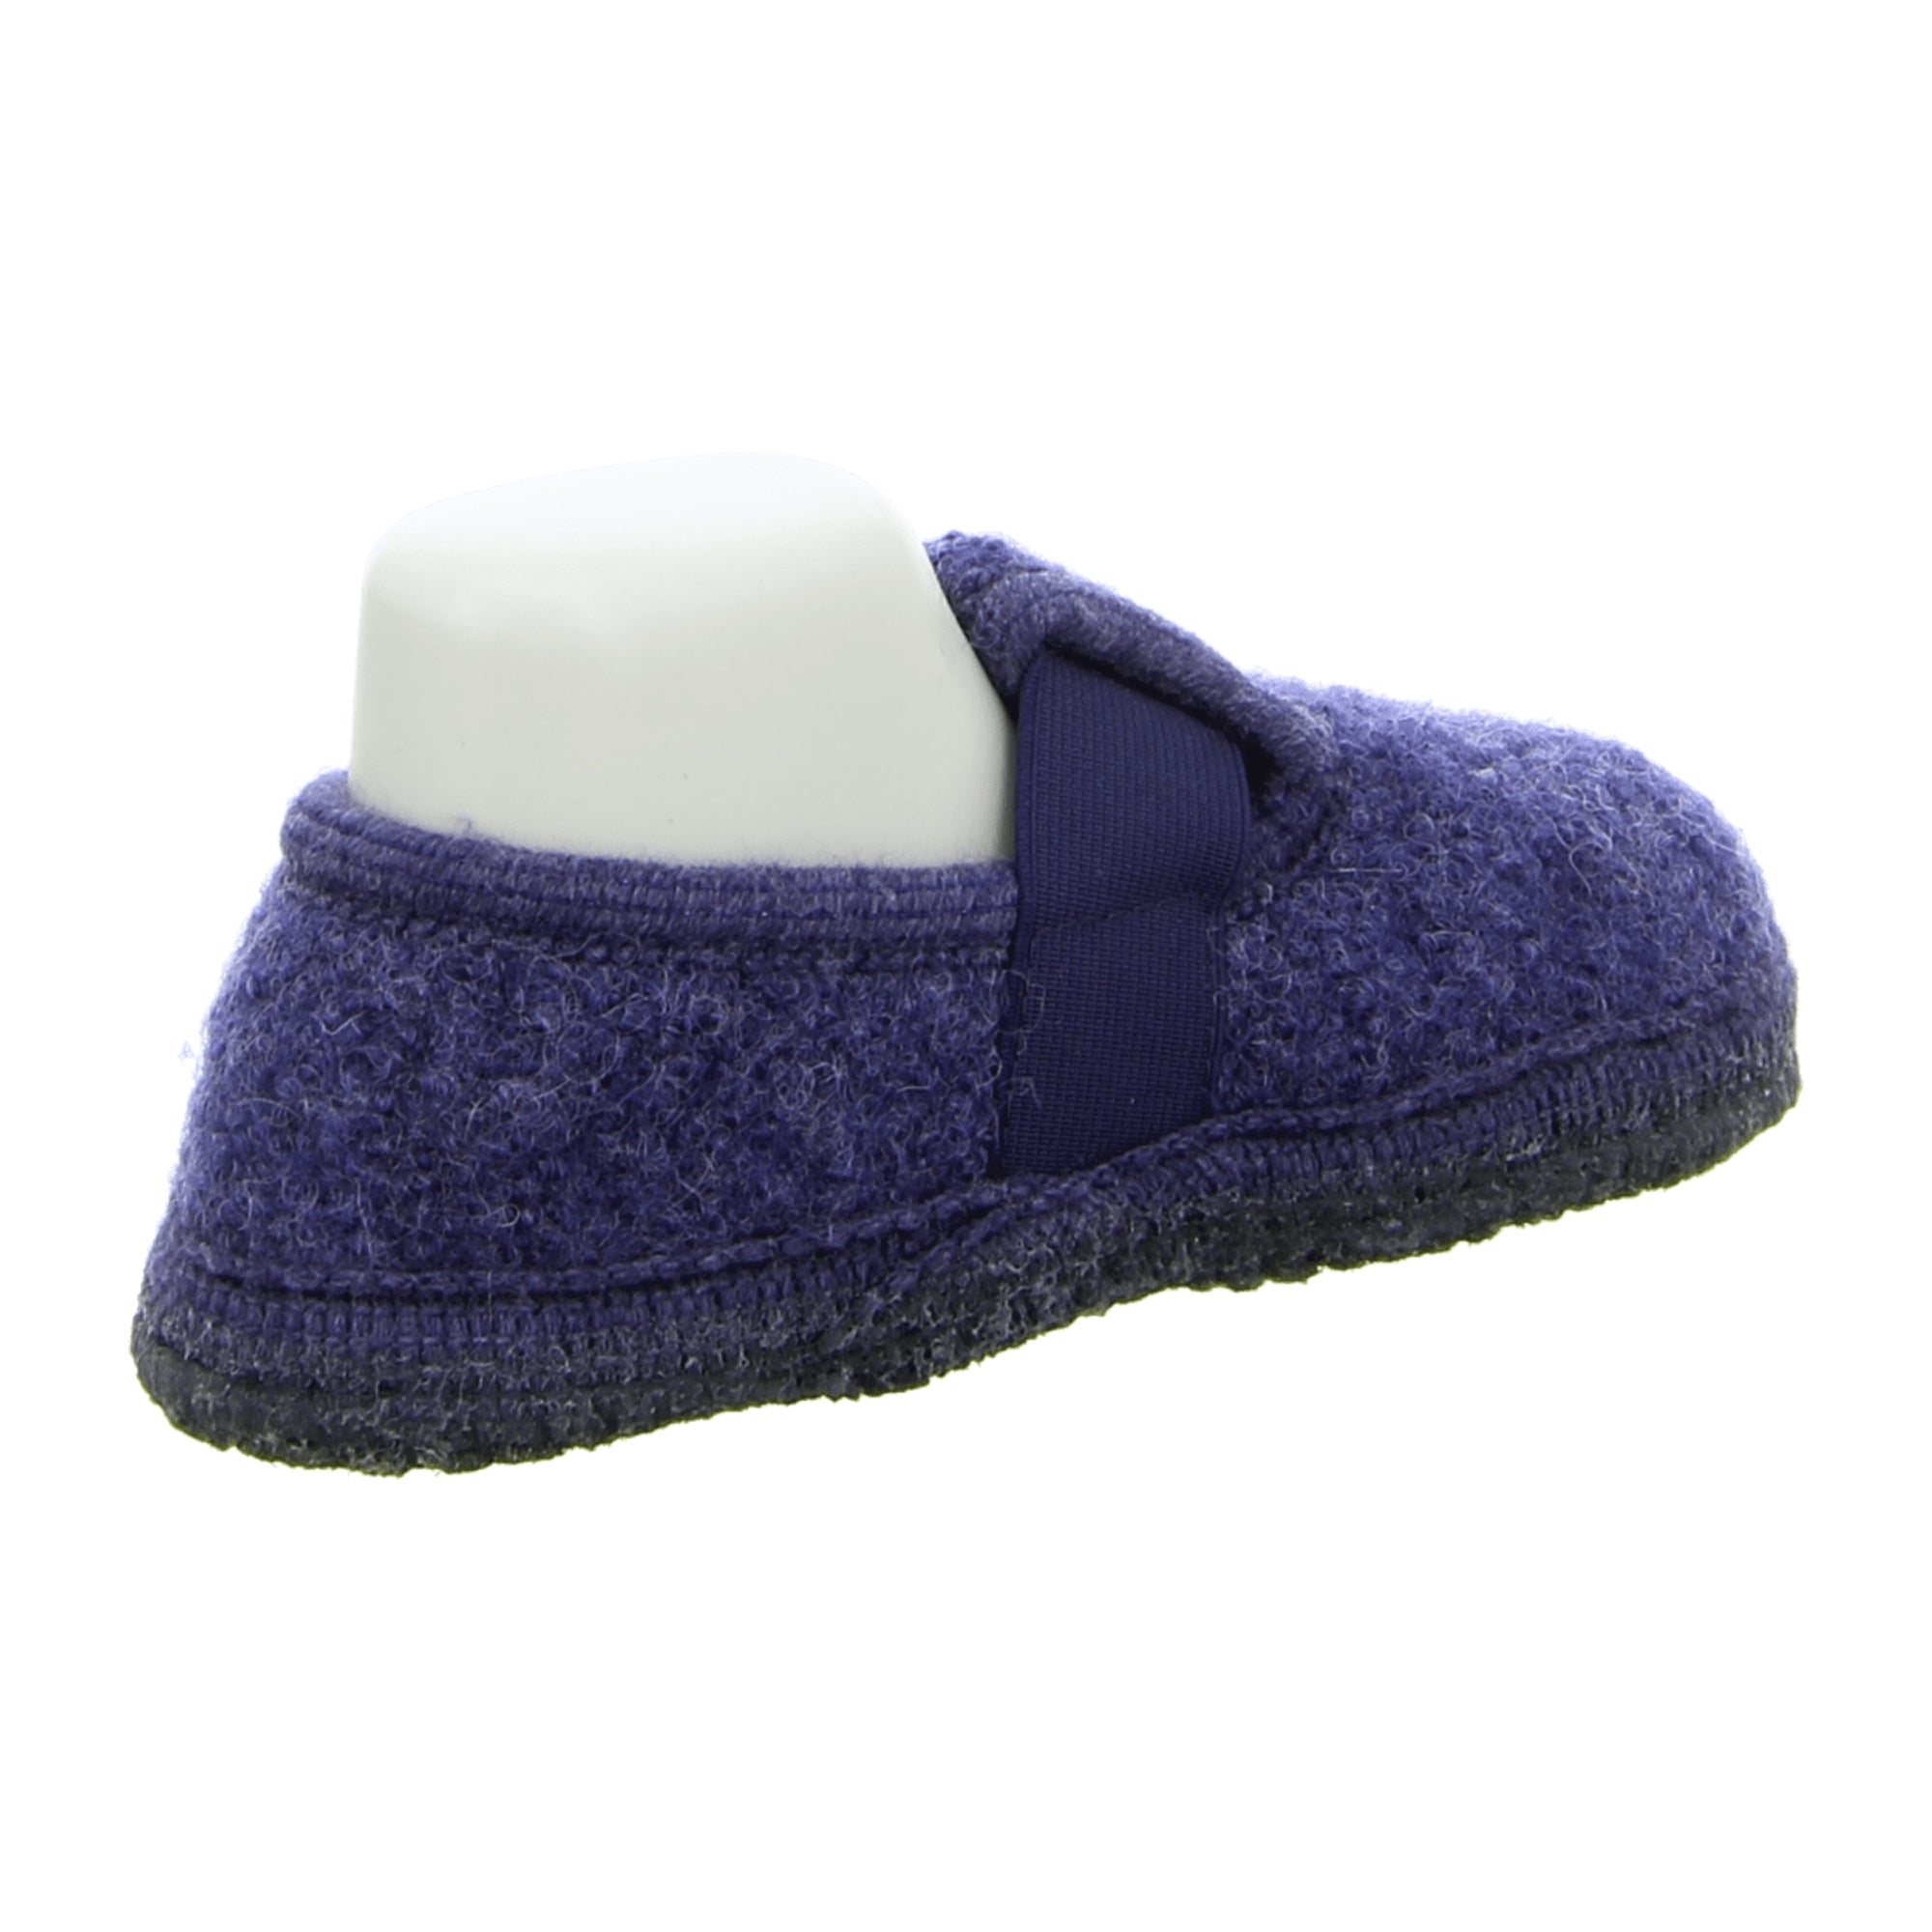 Haflinger Kids' Slipper Joschi - Comfortable Wool Slippers in Jeans Blue, Non-Slip Sole